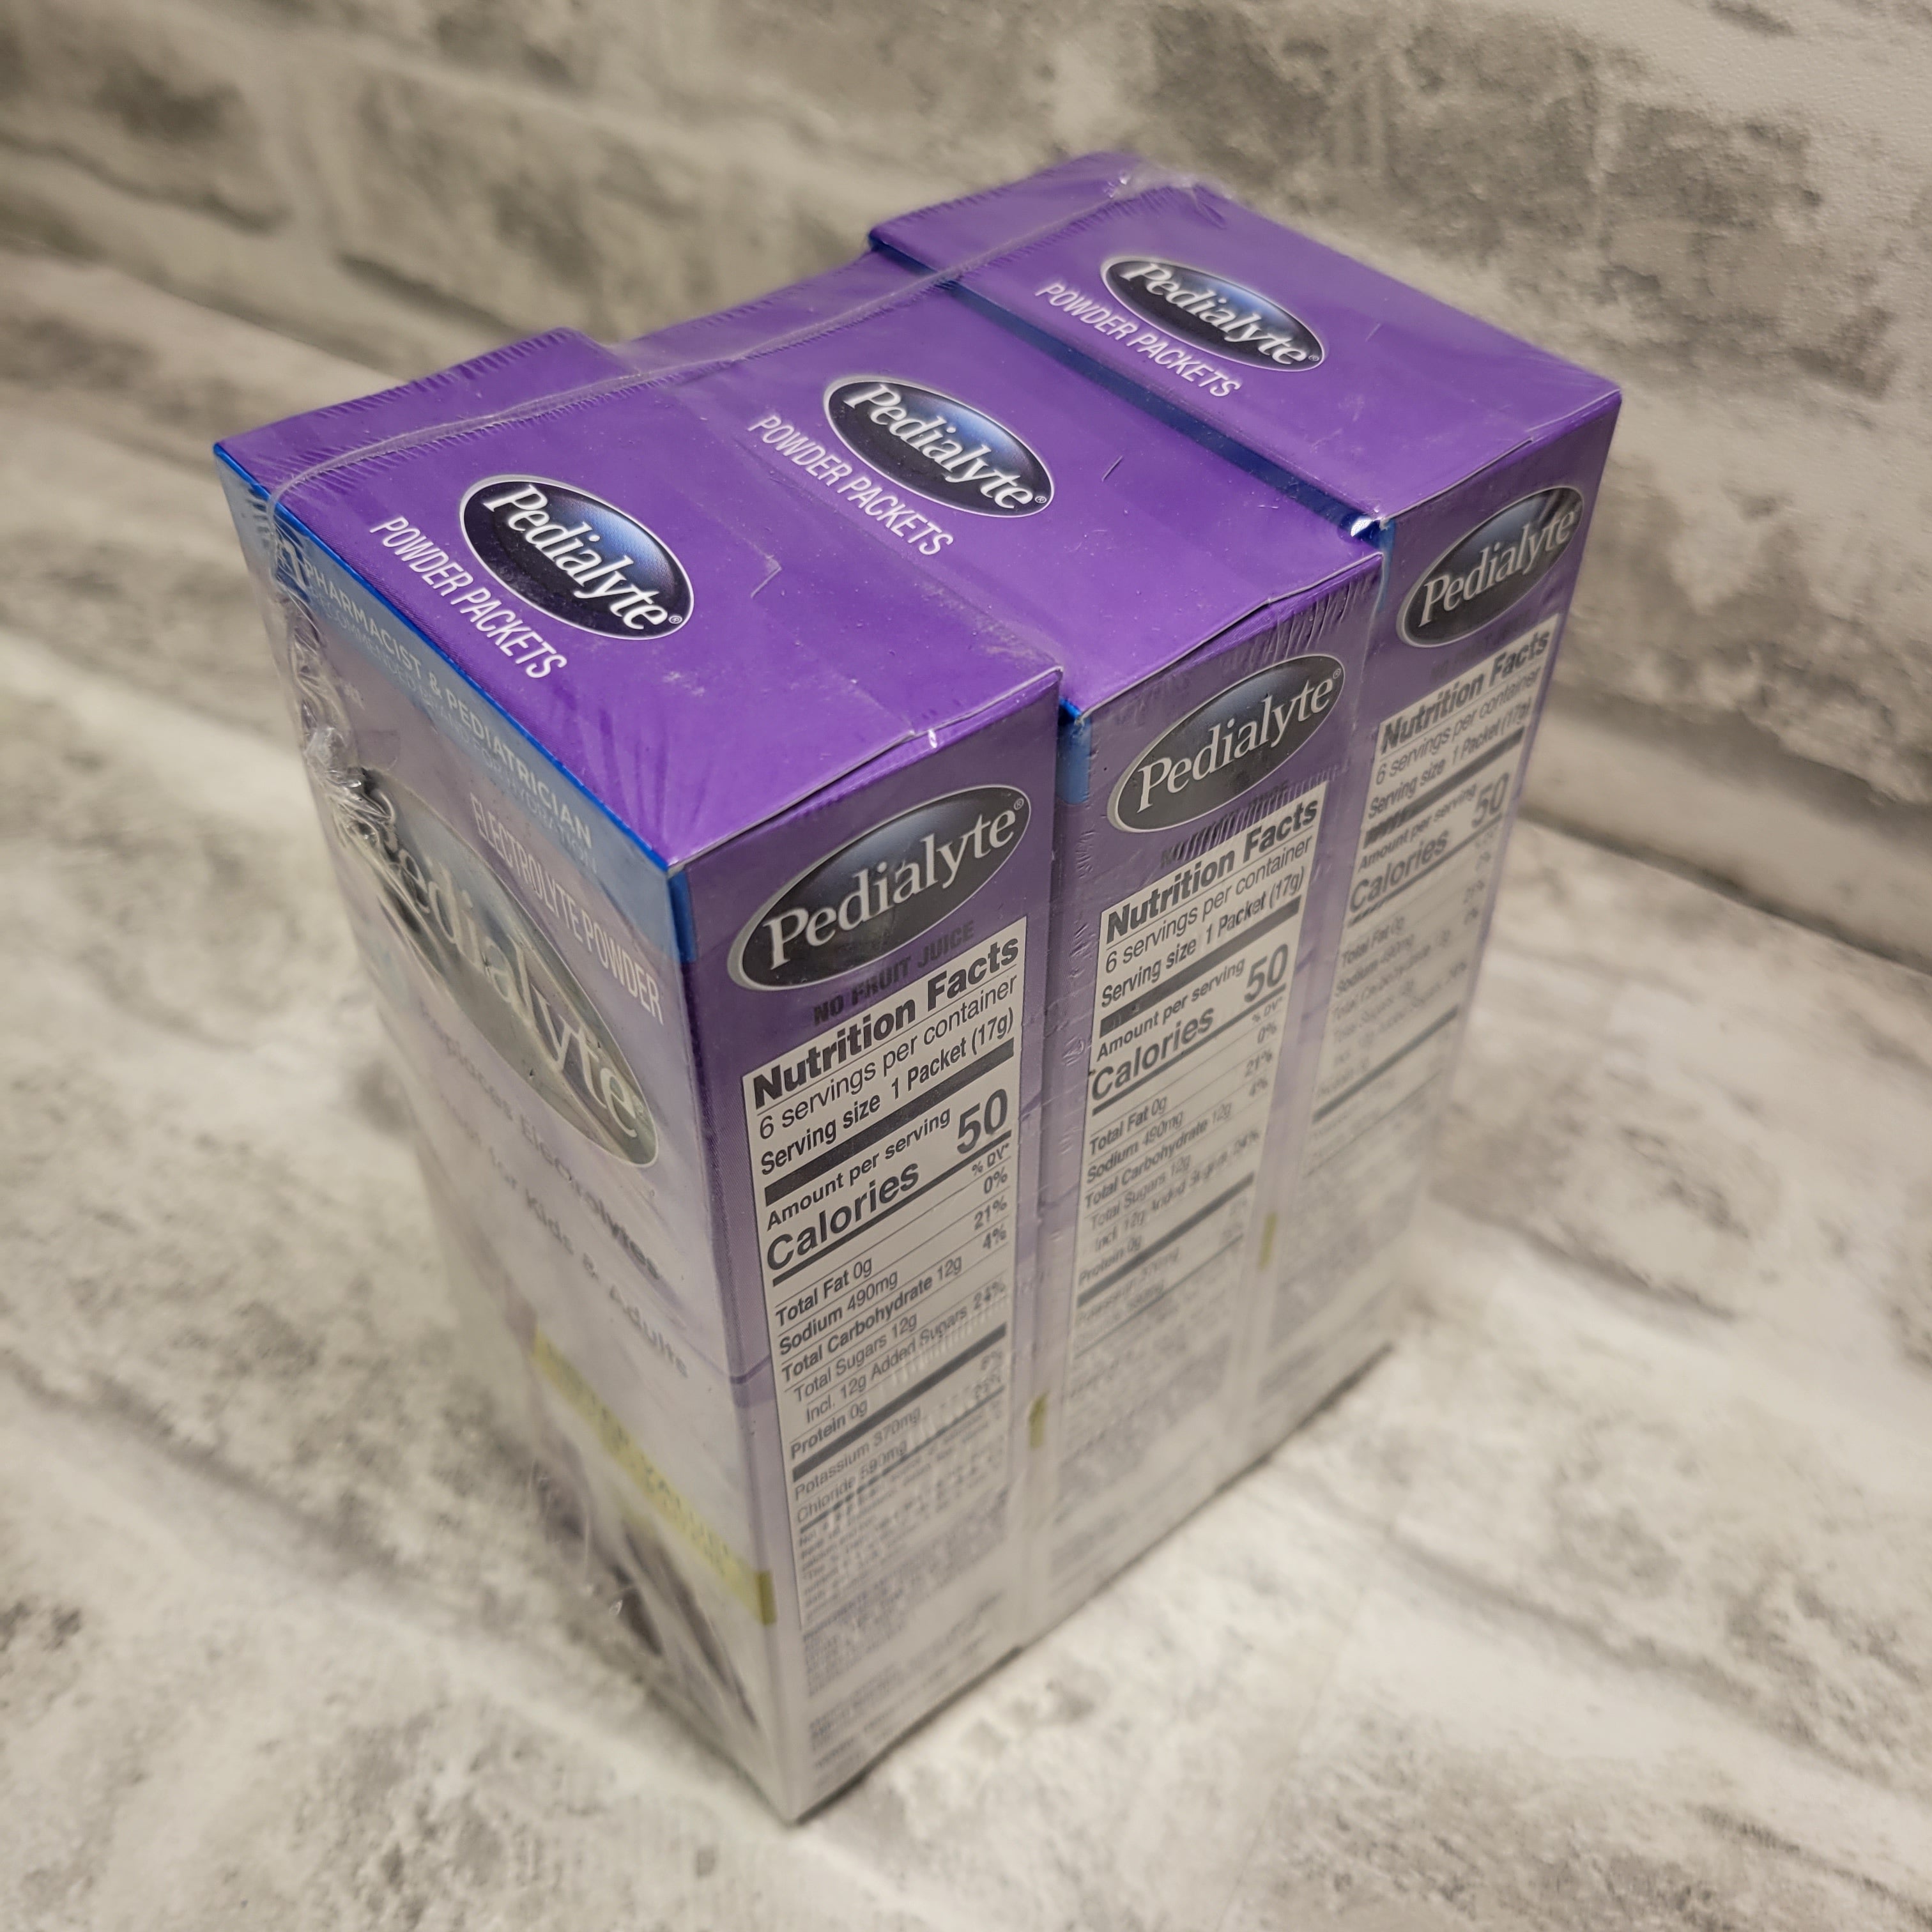 Pedialyte Electrolyte Powder, Grape, 0.6 oz Powder Packs, 18 Ct, Exp 07/01/2022 (7618388951278)